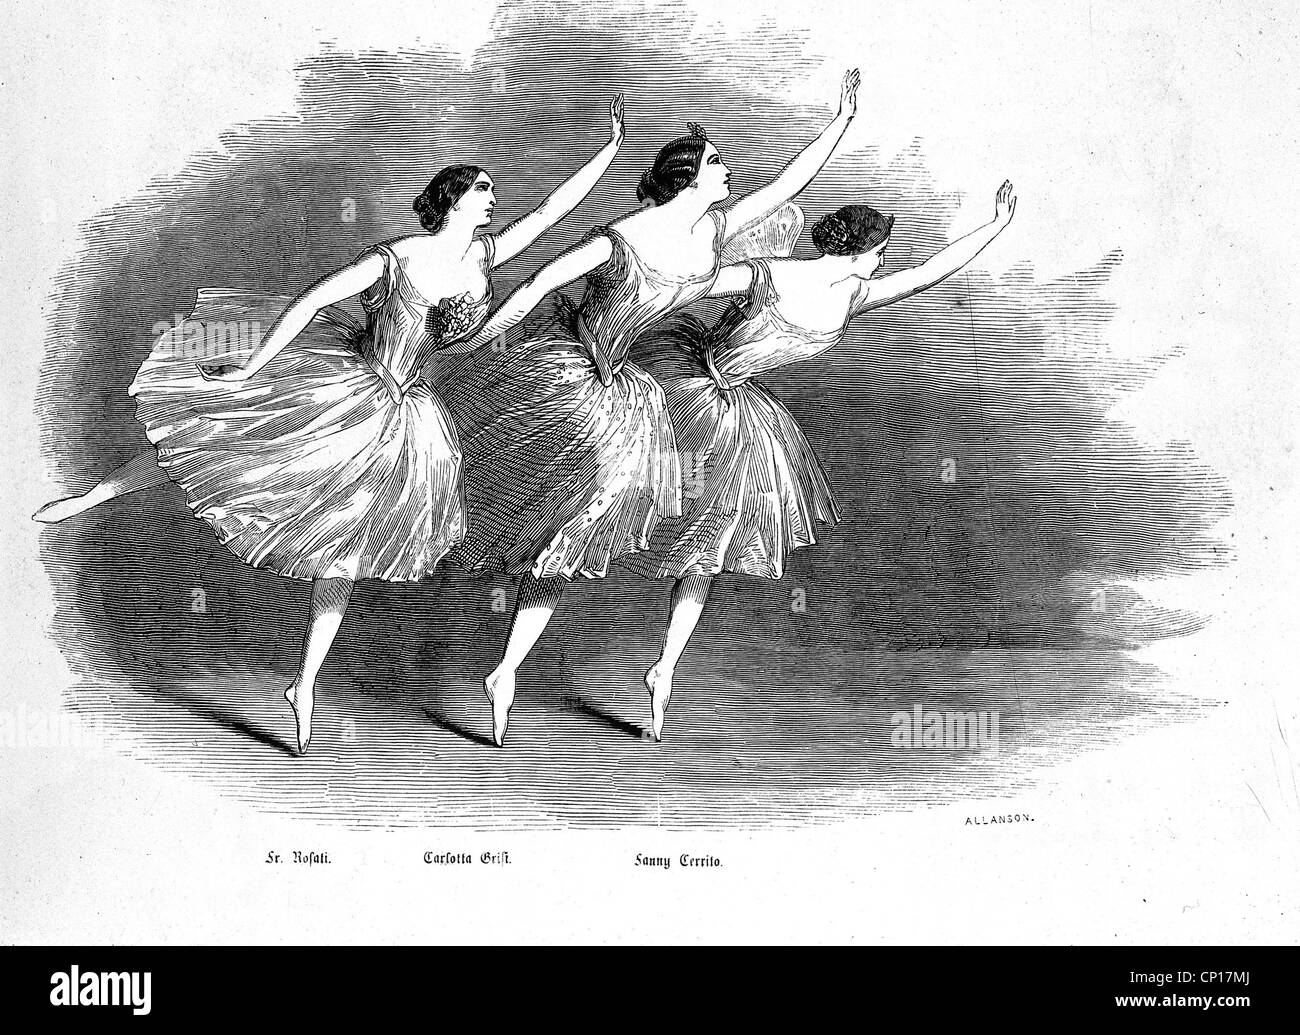 Danza, balletto, ballerina Fanny Cerriti, Carlotta Grisi, p. Rosati, balli, incisione in legno, 1853, diritti-aggiuntivi-non-disponibili Foto Stock